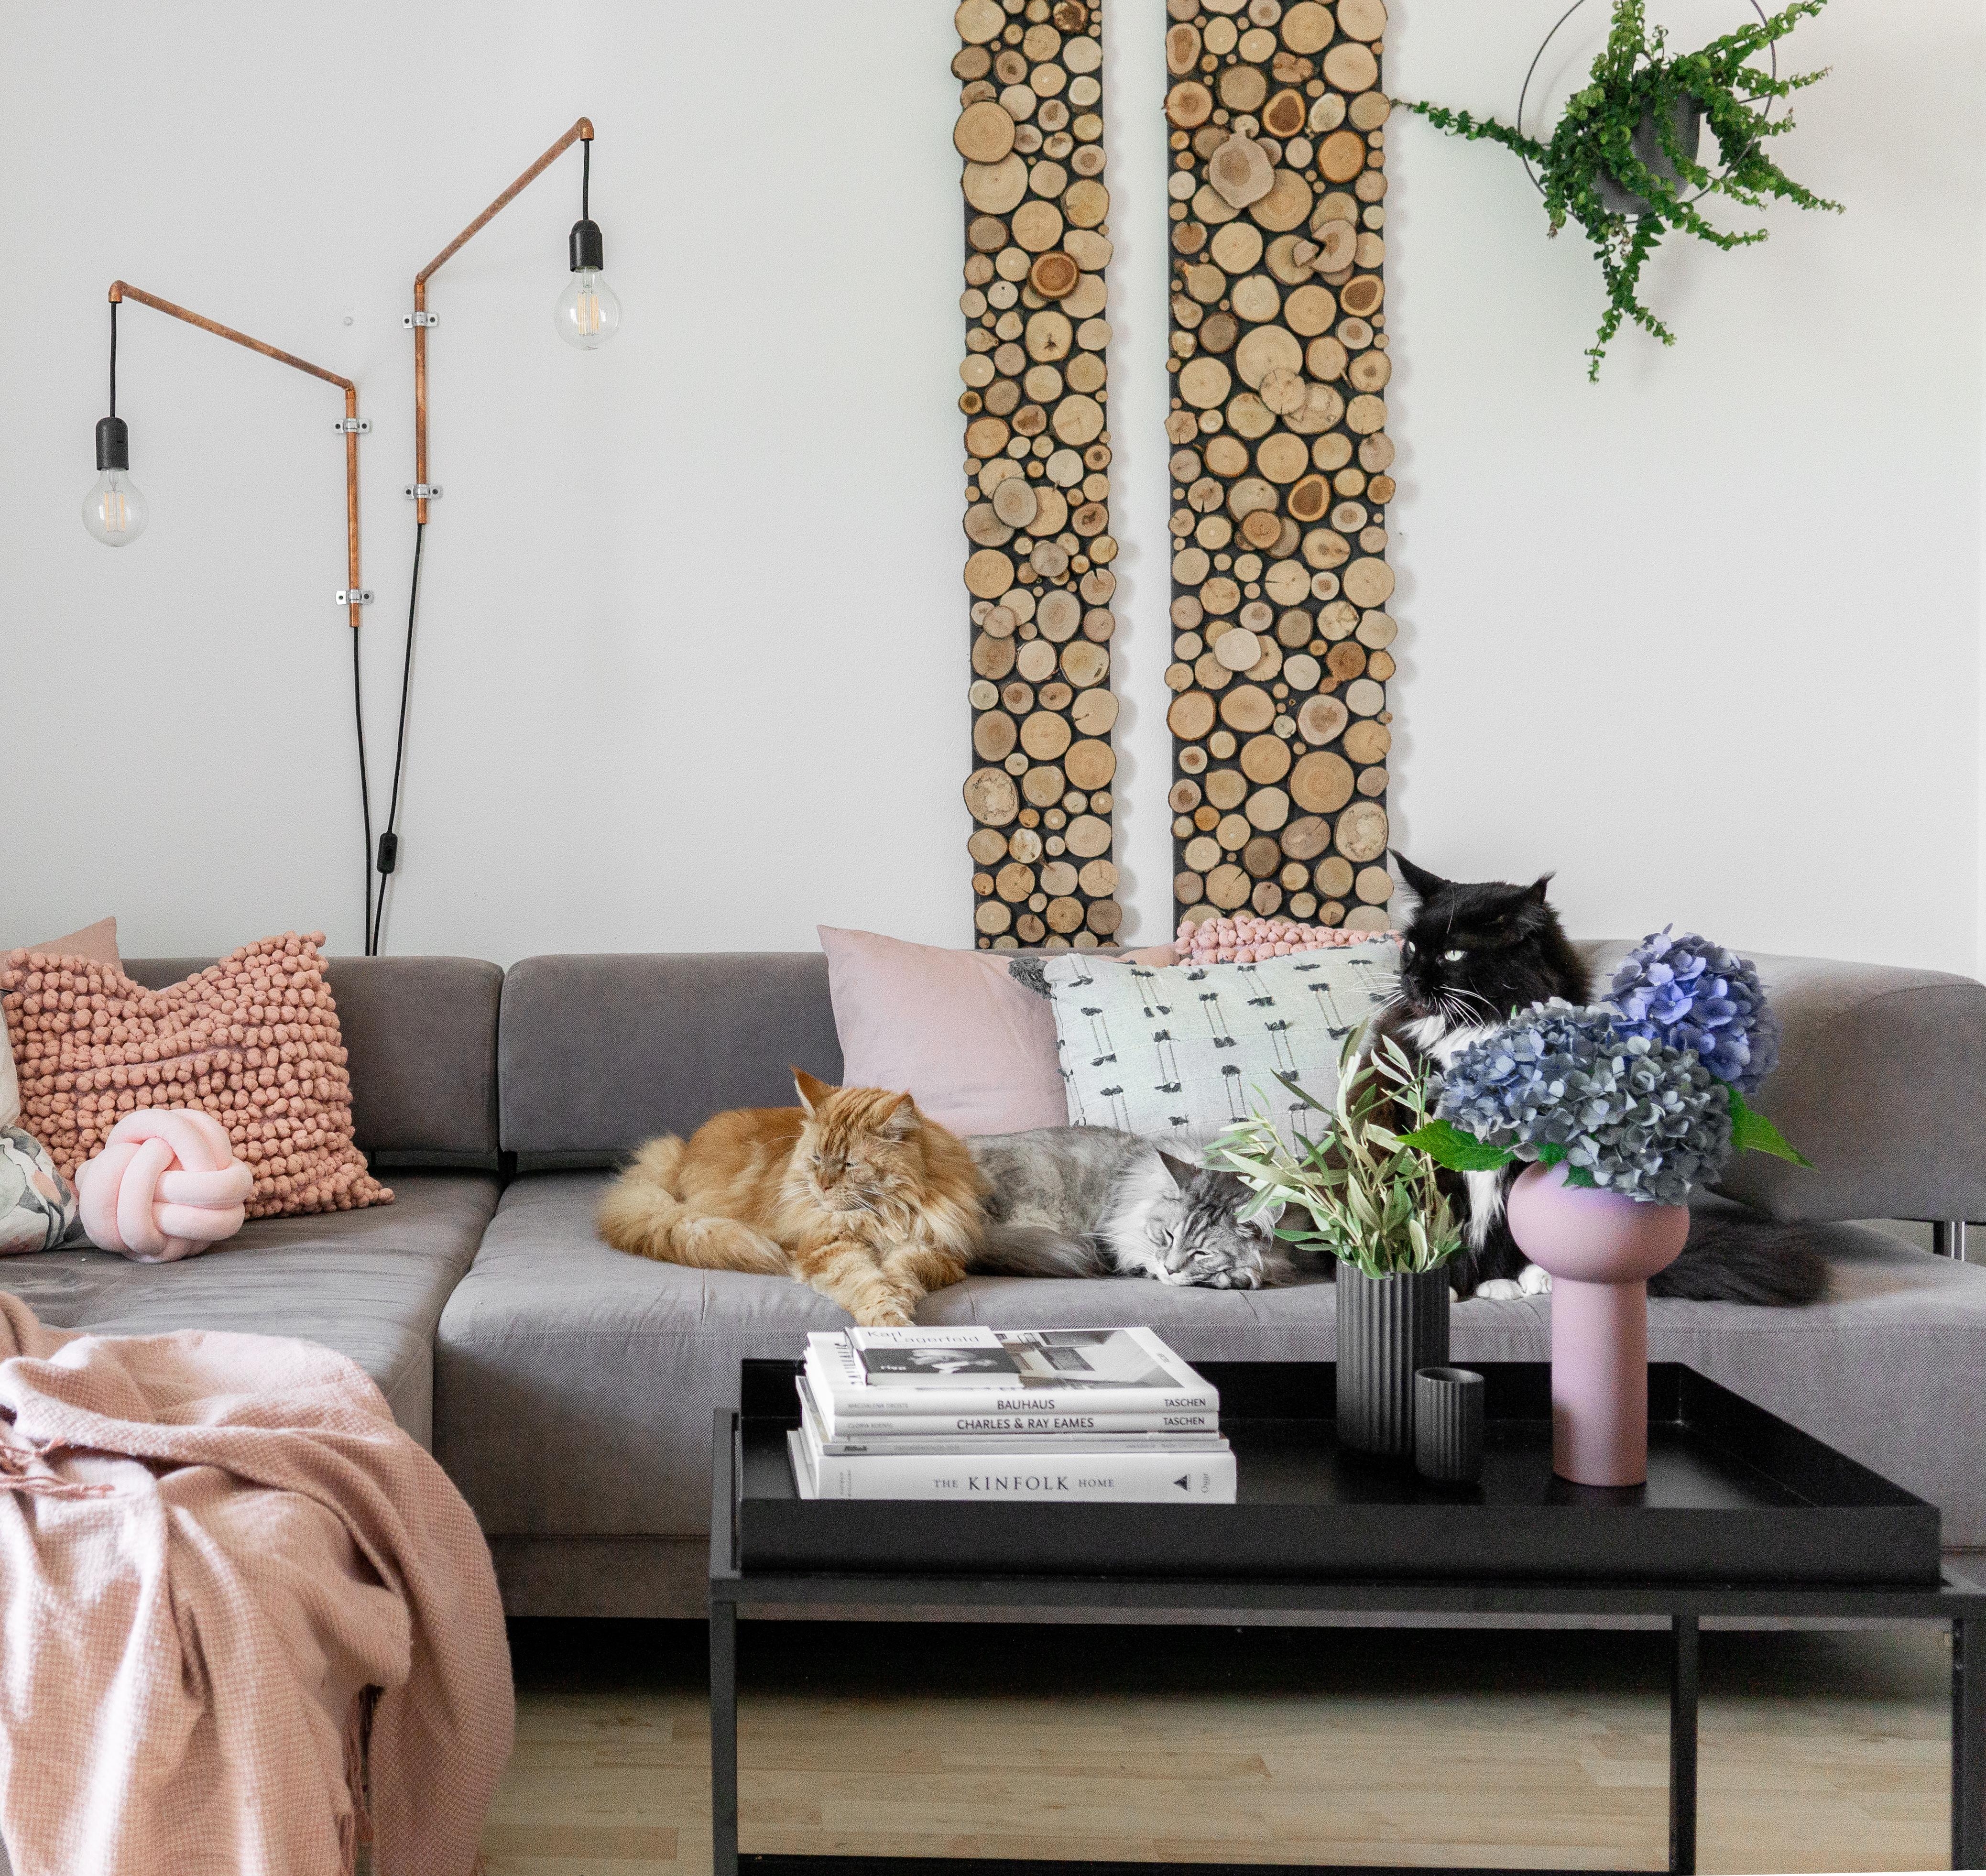 Samstag ist zum entspannen da #solebich #wohnzimmer #livingroom #germaninteriorbloggers  #gemütlich #cozy #couchstyle 